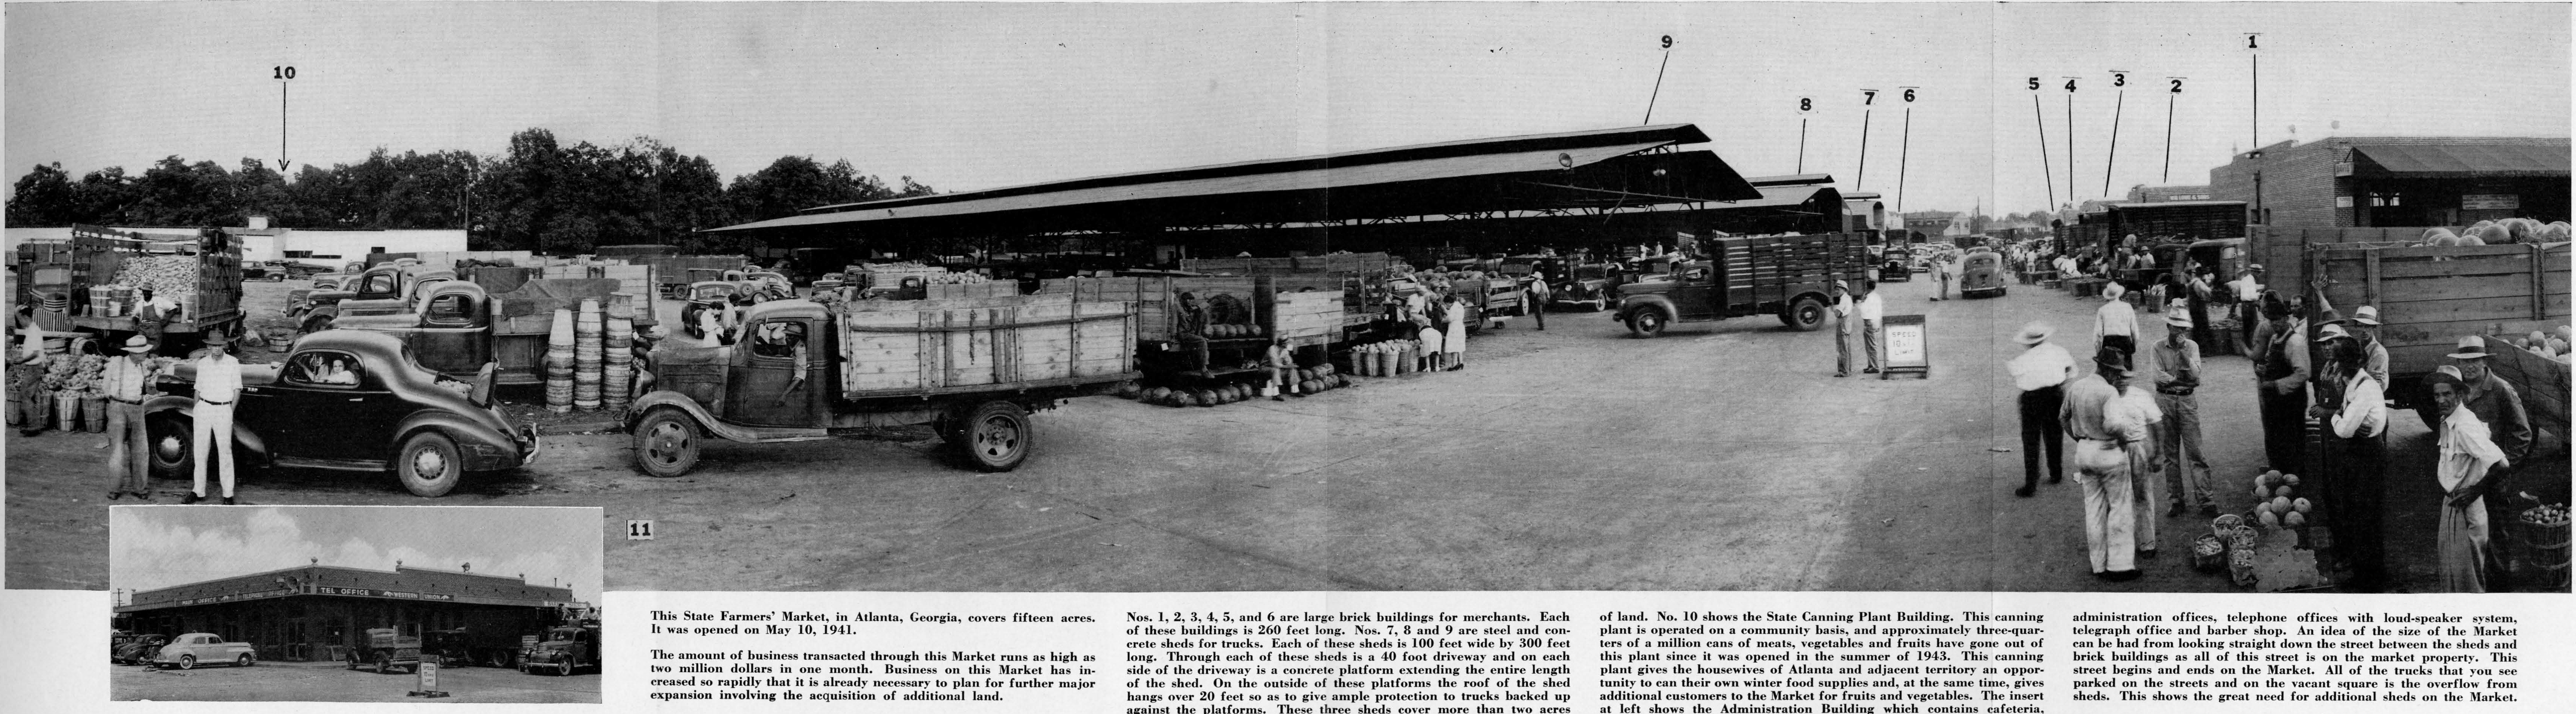 (1944) Murphy Avenue Farmers Market.